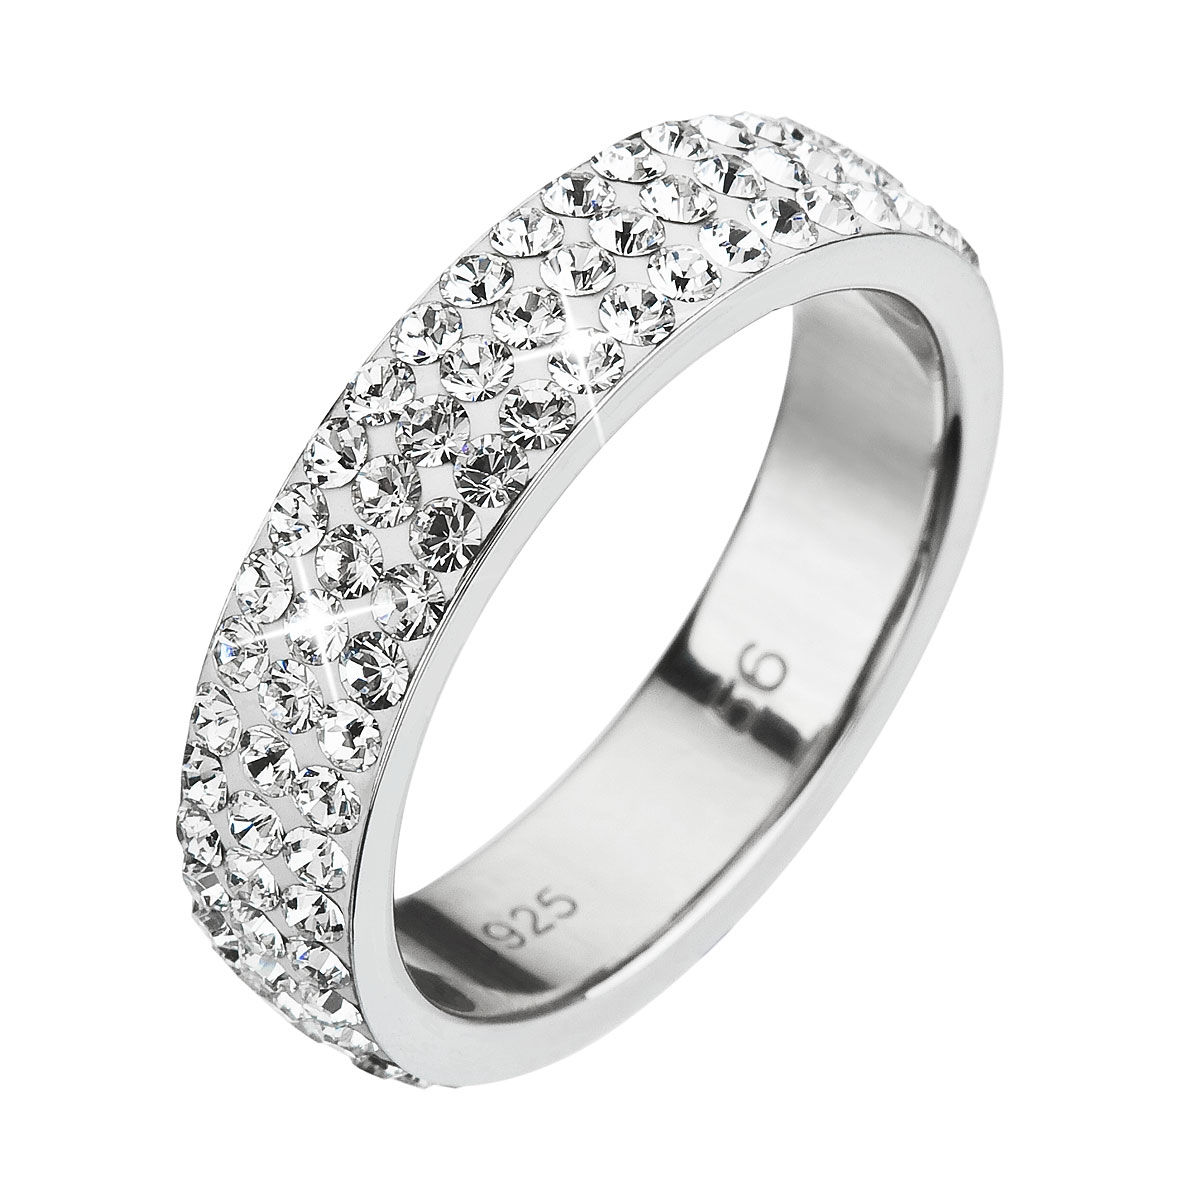 Strieborný prsteň s kryštálmi Swarovski Crystal